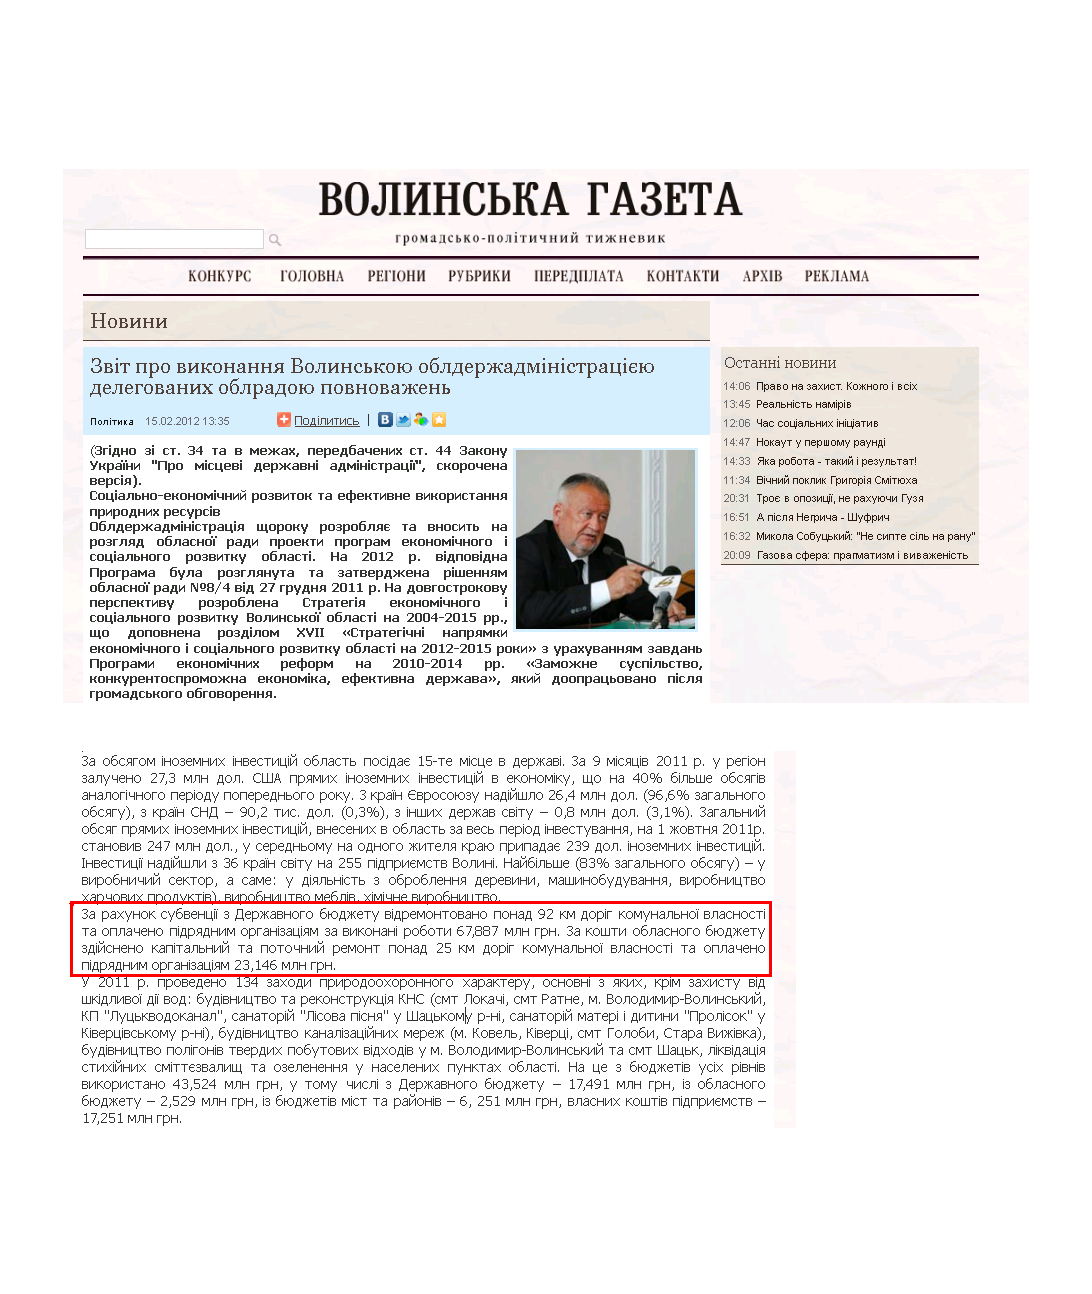 http://volga.lutsk.ua/ukr/rubrics/news/1653/